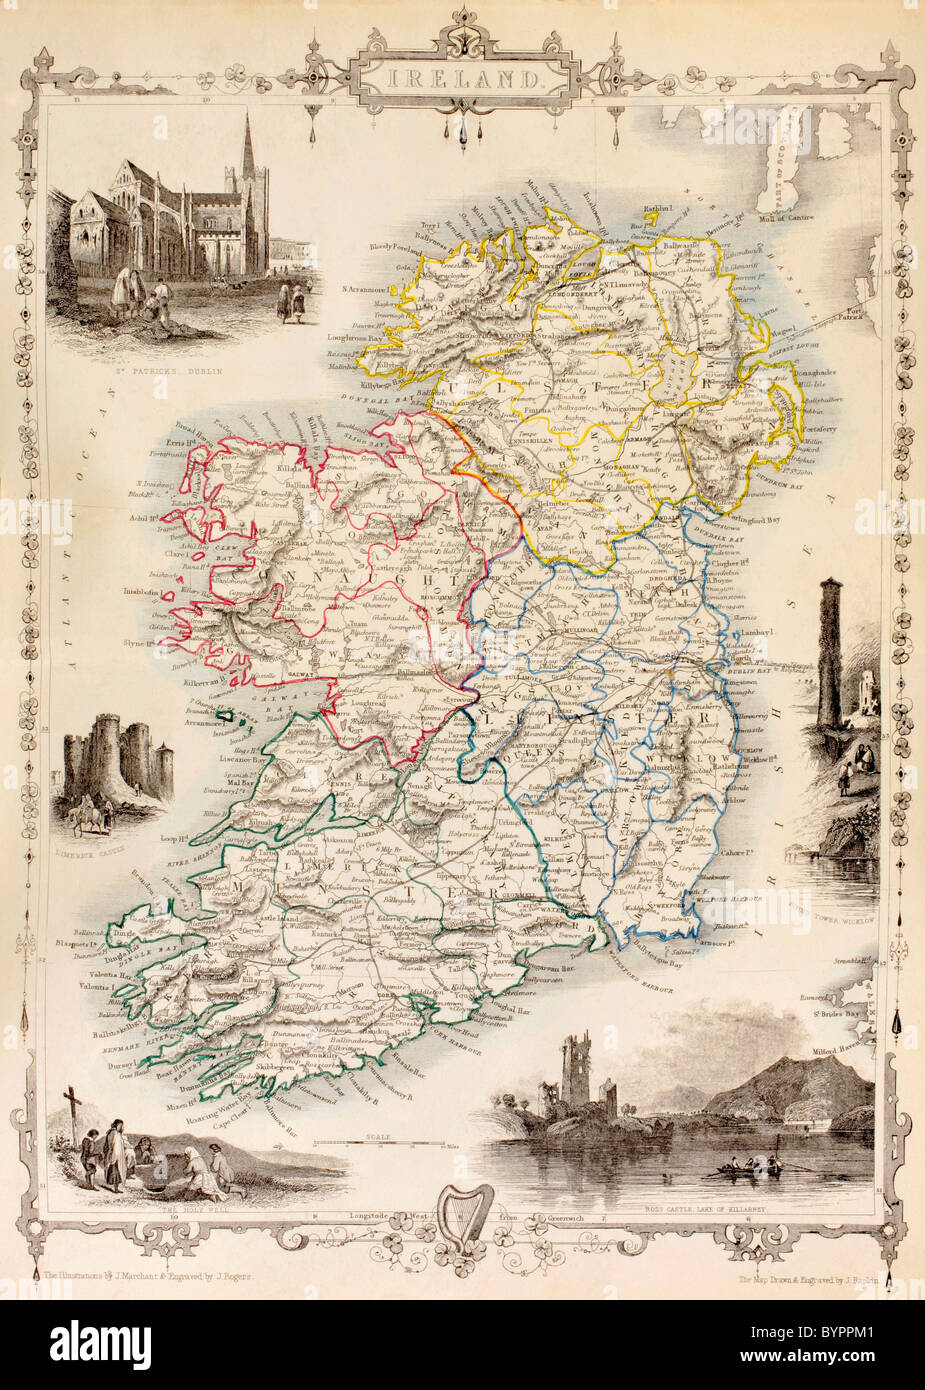 Mapa de Irlanda a partir de la historia de Irlanda por Thomas Wright, publicado alrededor de 1854. Foto de stock